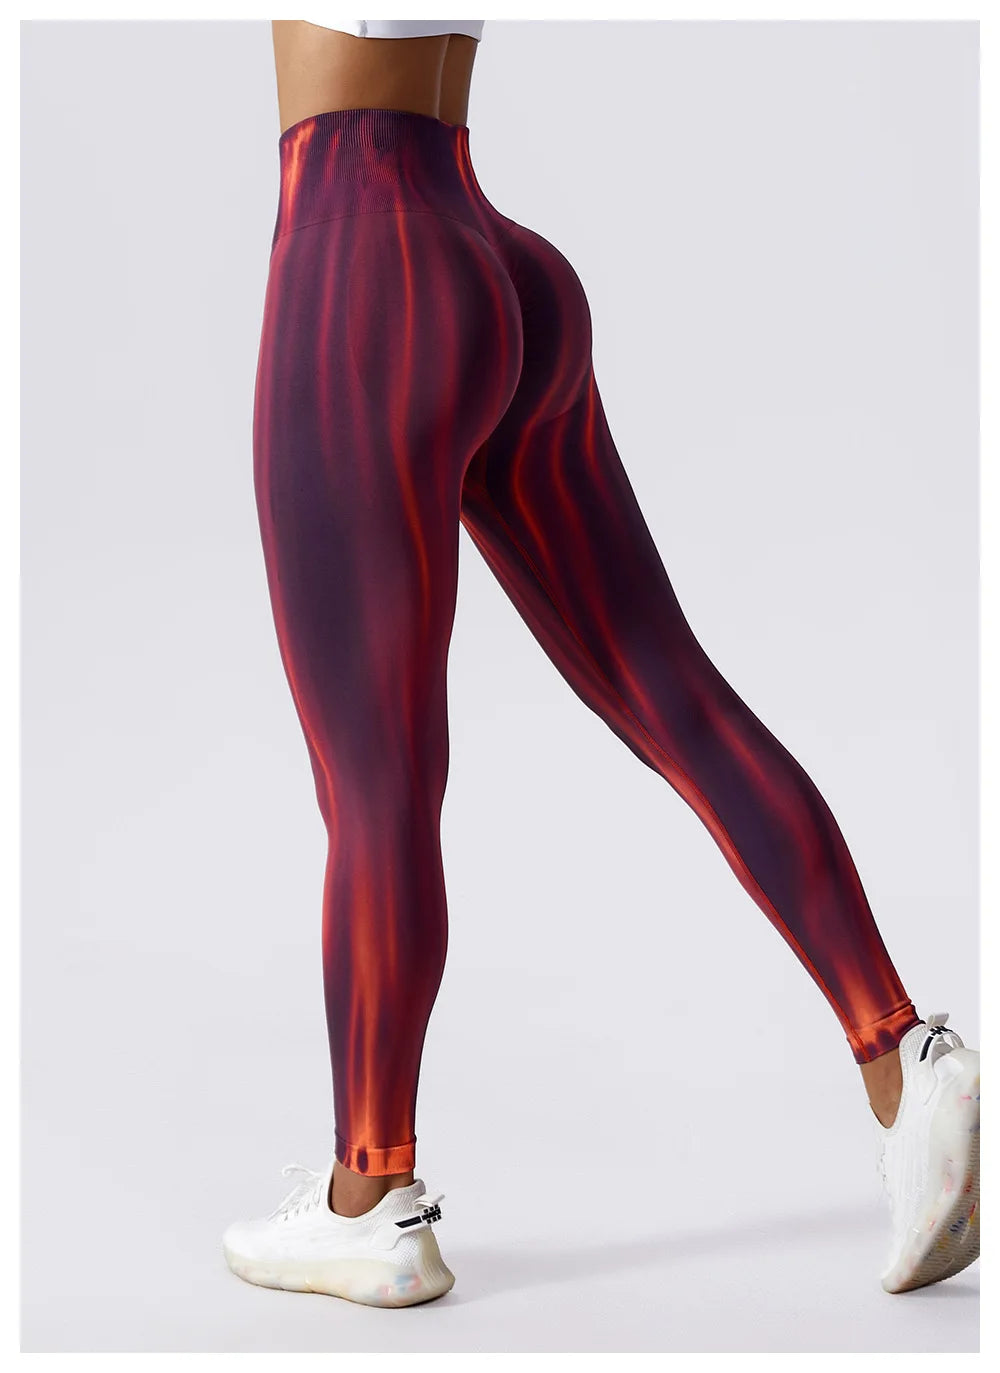 Adriana Tie-Dye leggings